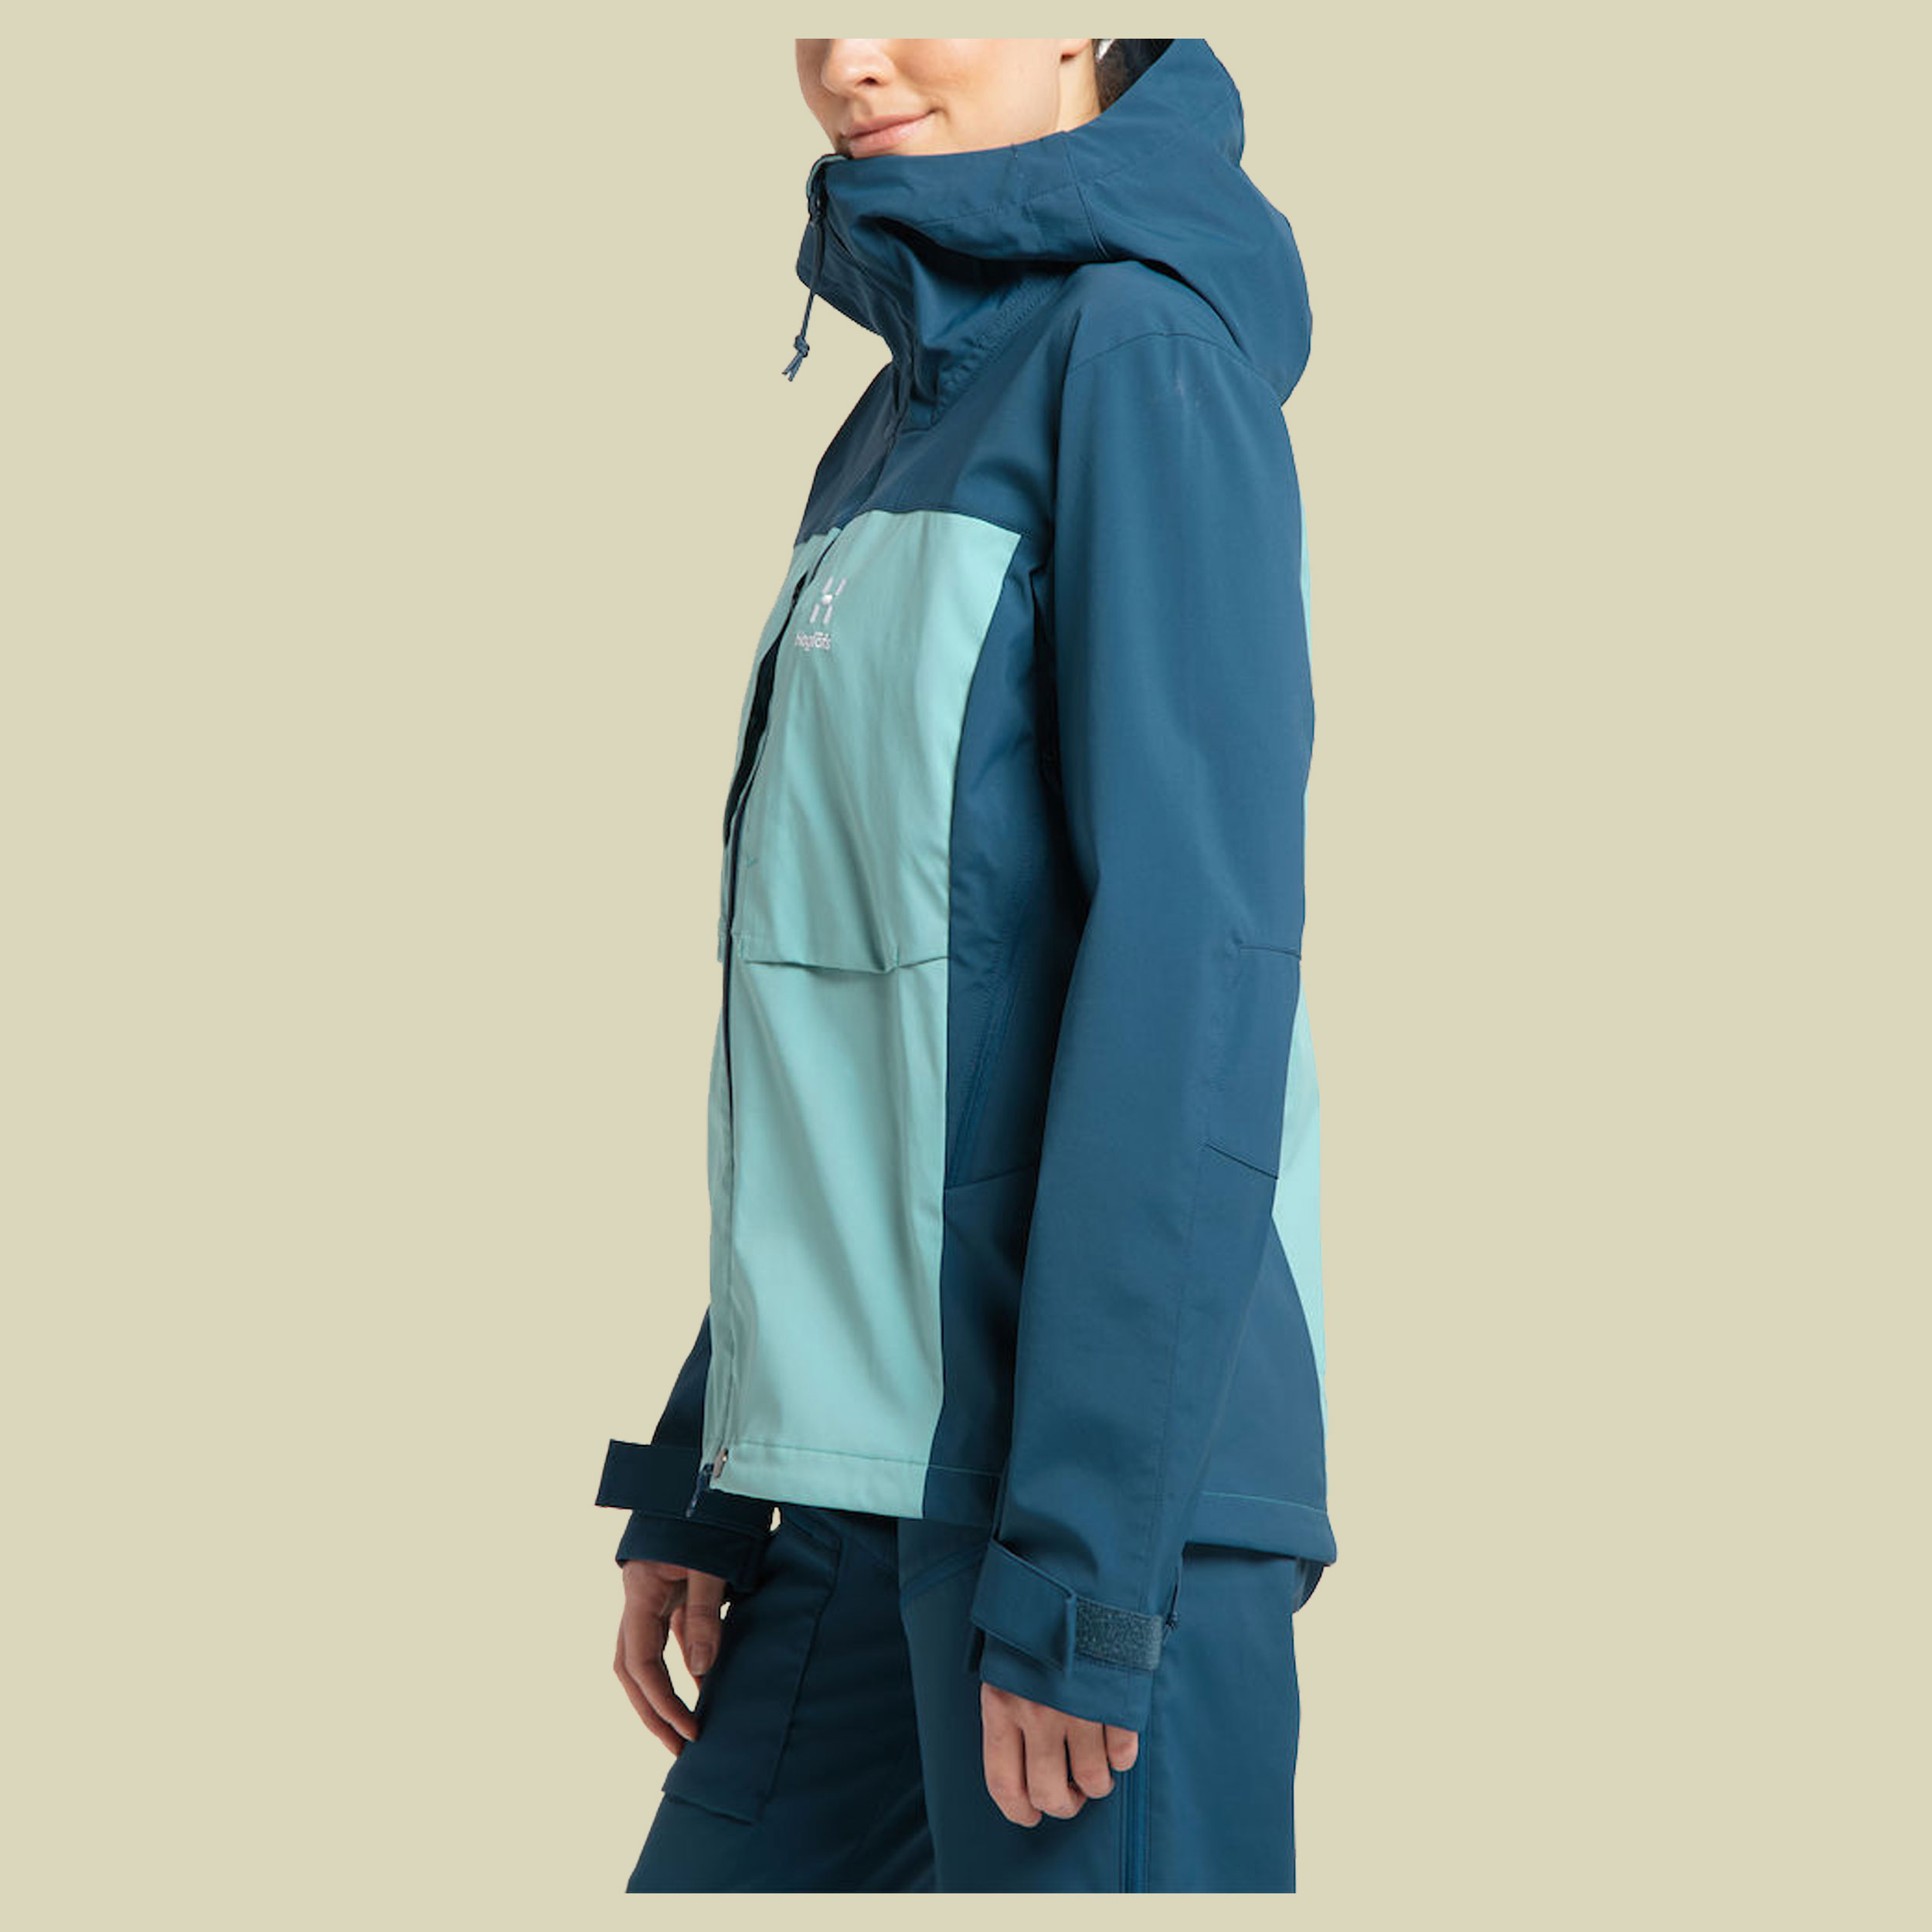 Touring Infinium Jacket Women Größe XL Farbe frost blue/dark ocean